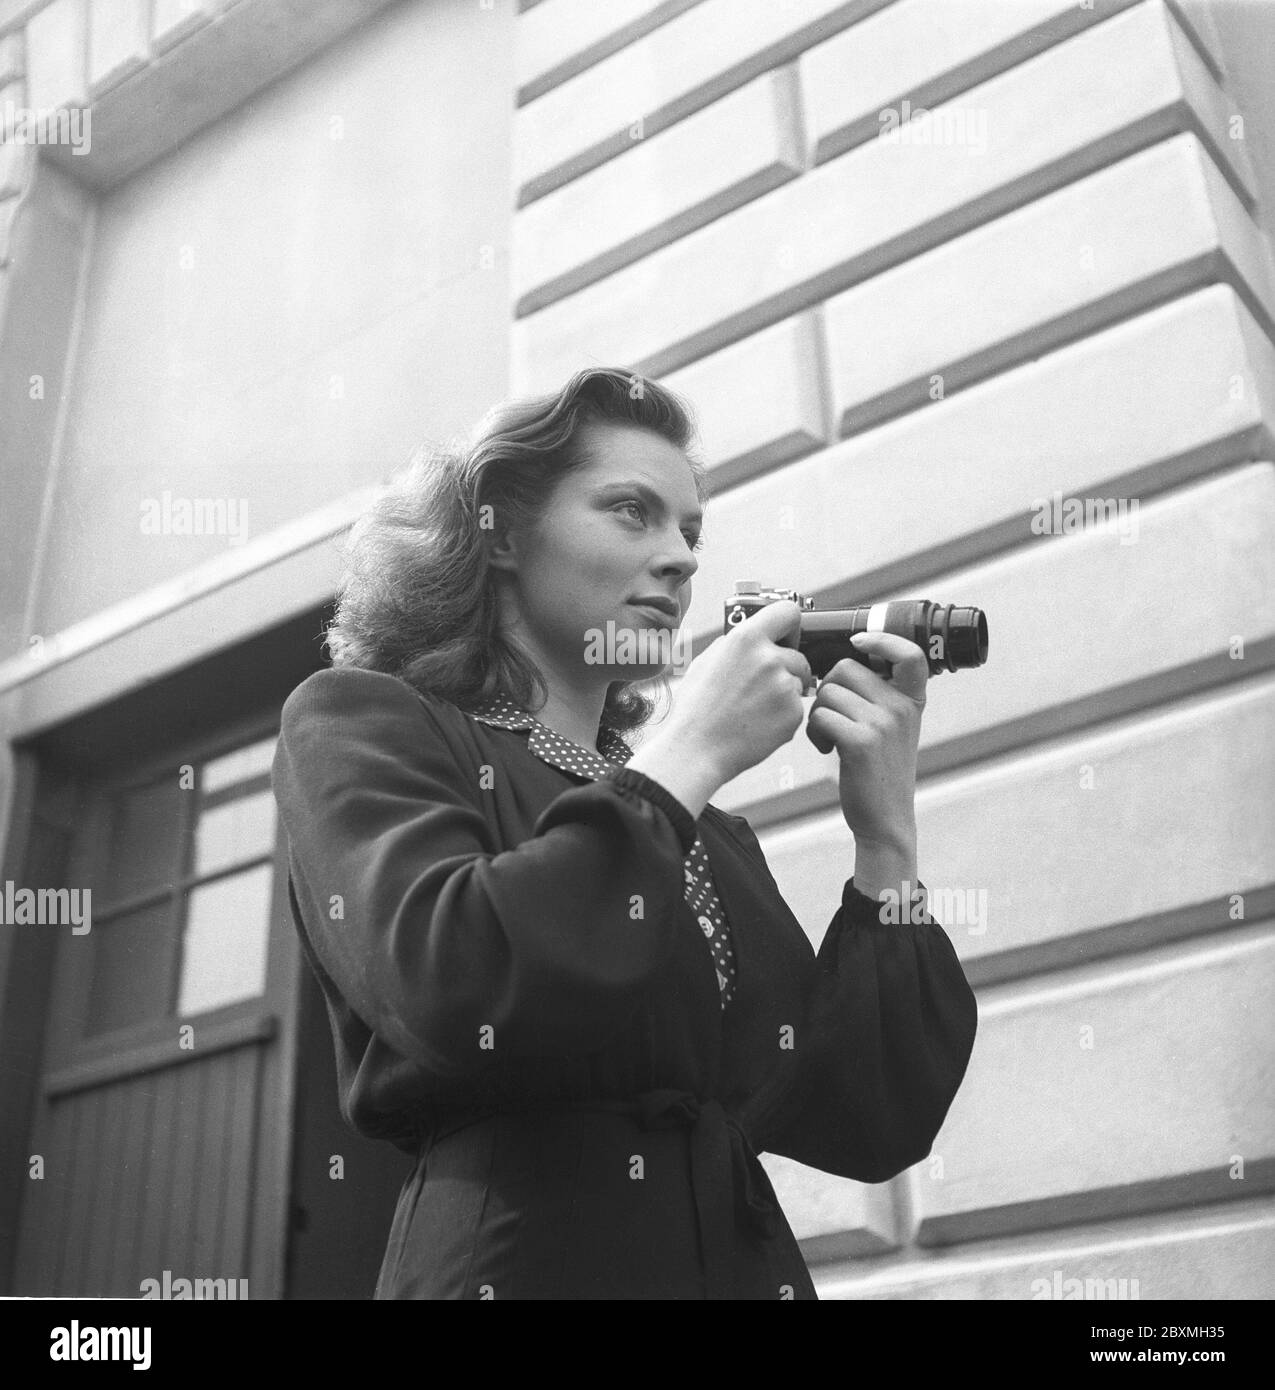 Viveca Lindfors. Schwedisch-Amerikanische Schauspielerin. 1920-1995. Neben ihrer Film- und Theaterlaufbahn war sie eine begeisterte Fotografin. Hier abgebildet beim Fotografieren mit einer Kamera und einem darauf montierten Teleskopobjektiv. Schweden 1943. Kristoffersson. Stockfoto